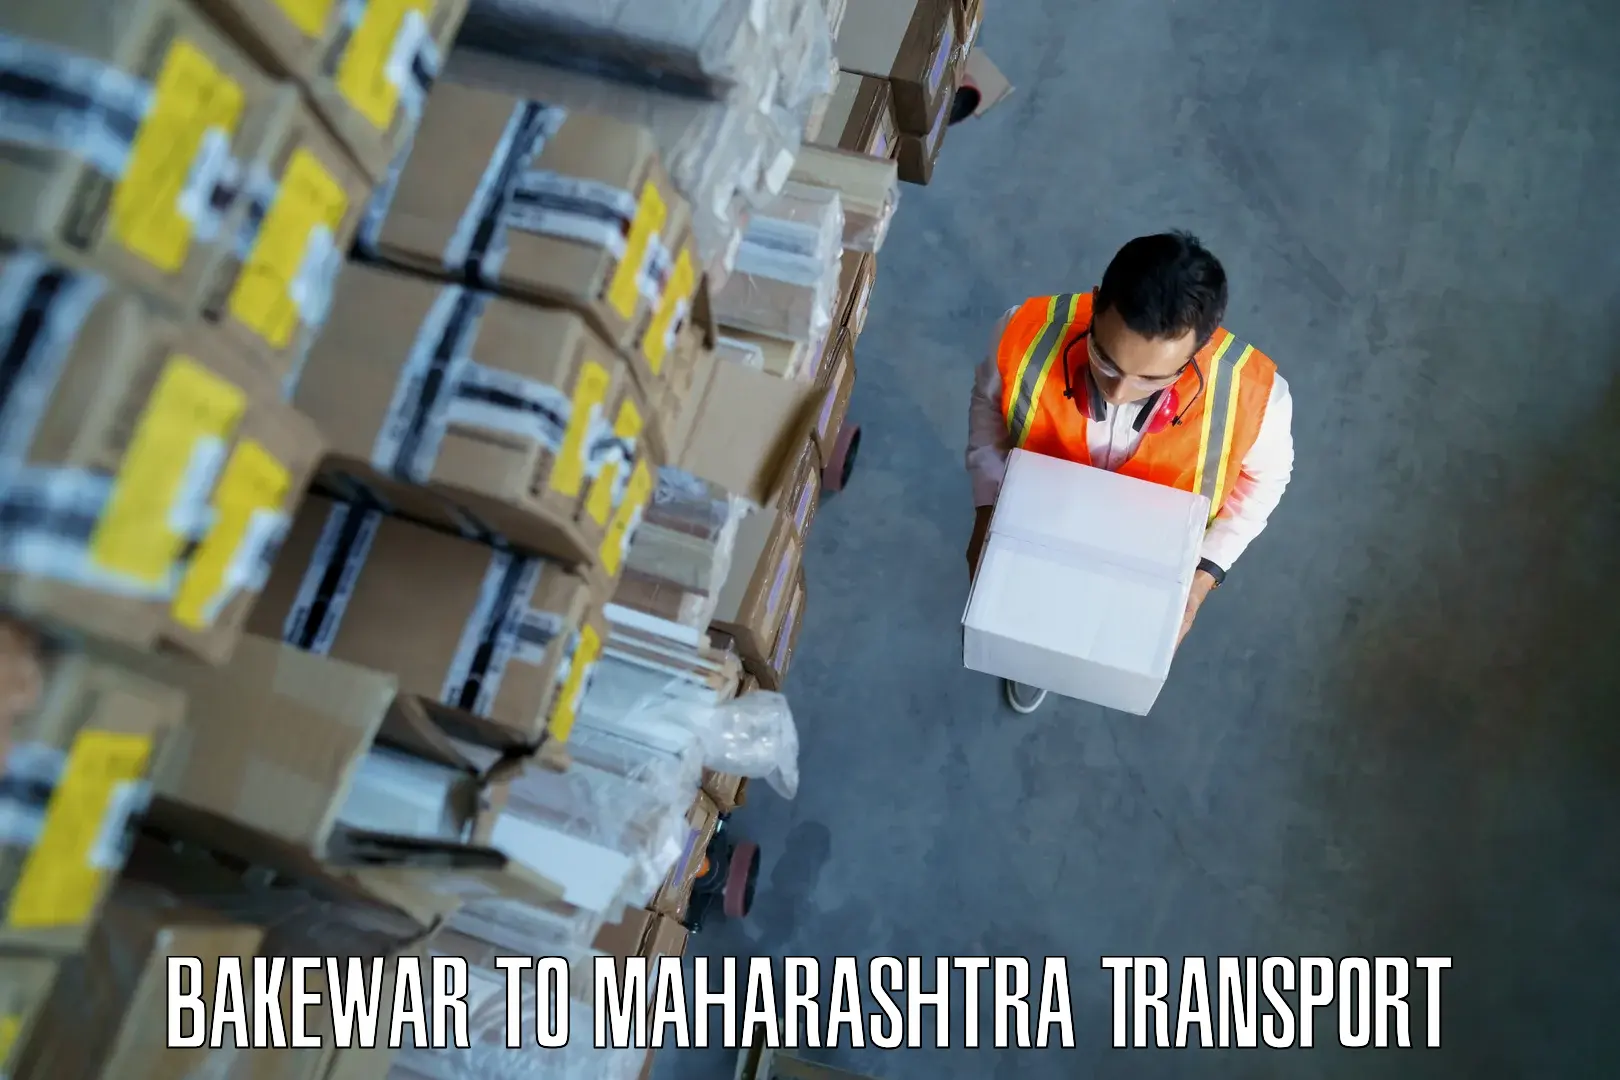 Parcel transport services Bakewar to Maharashtra